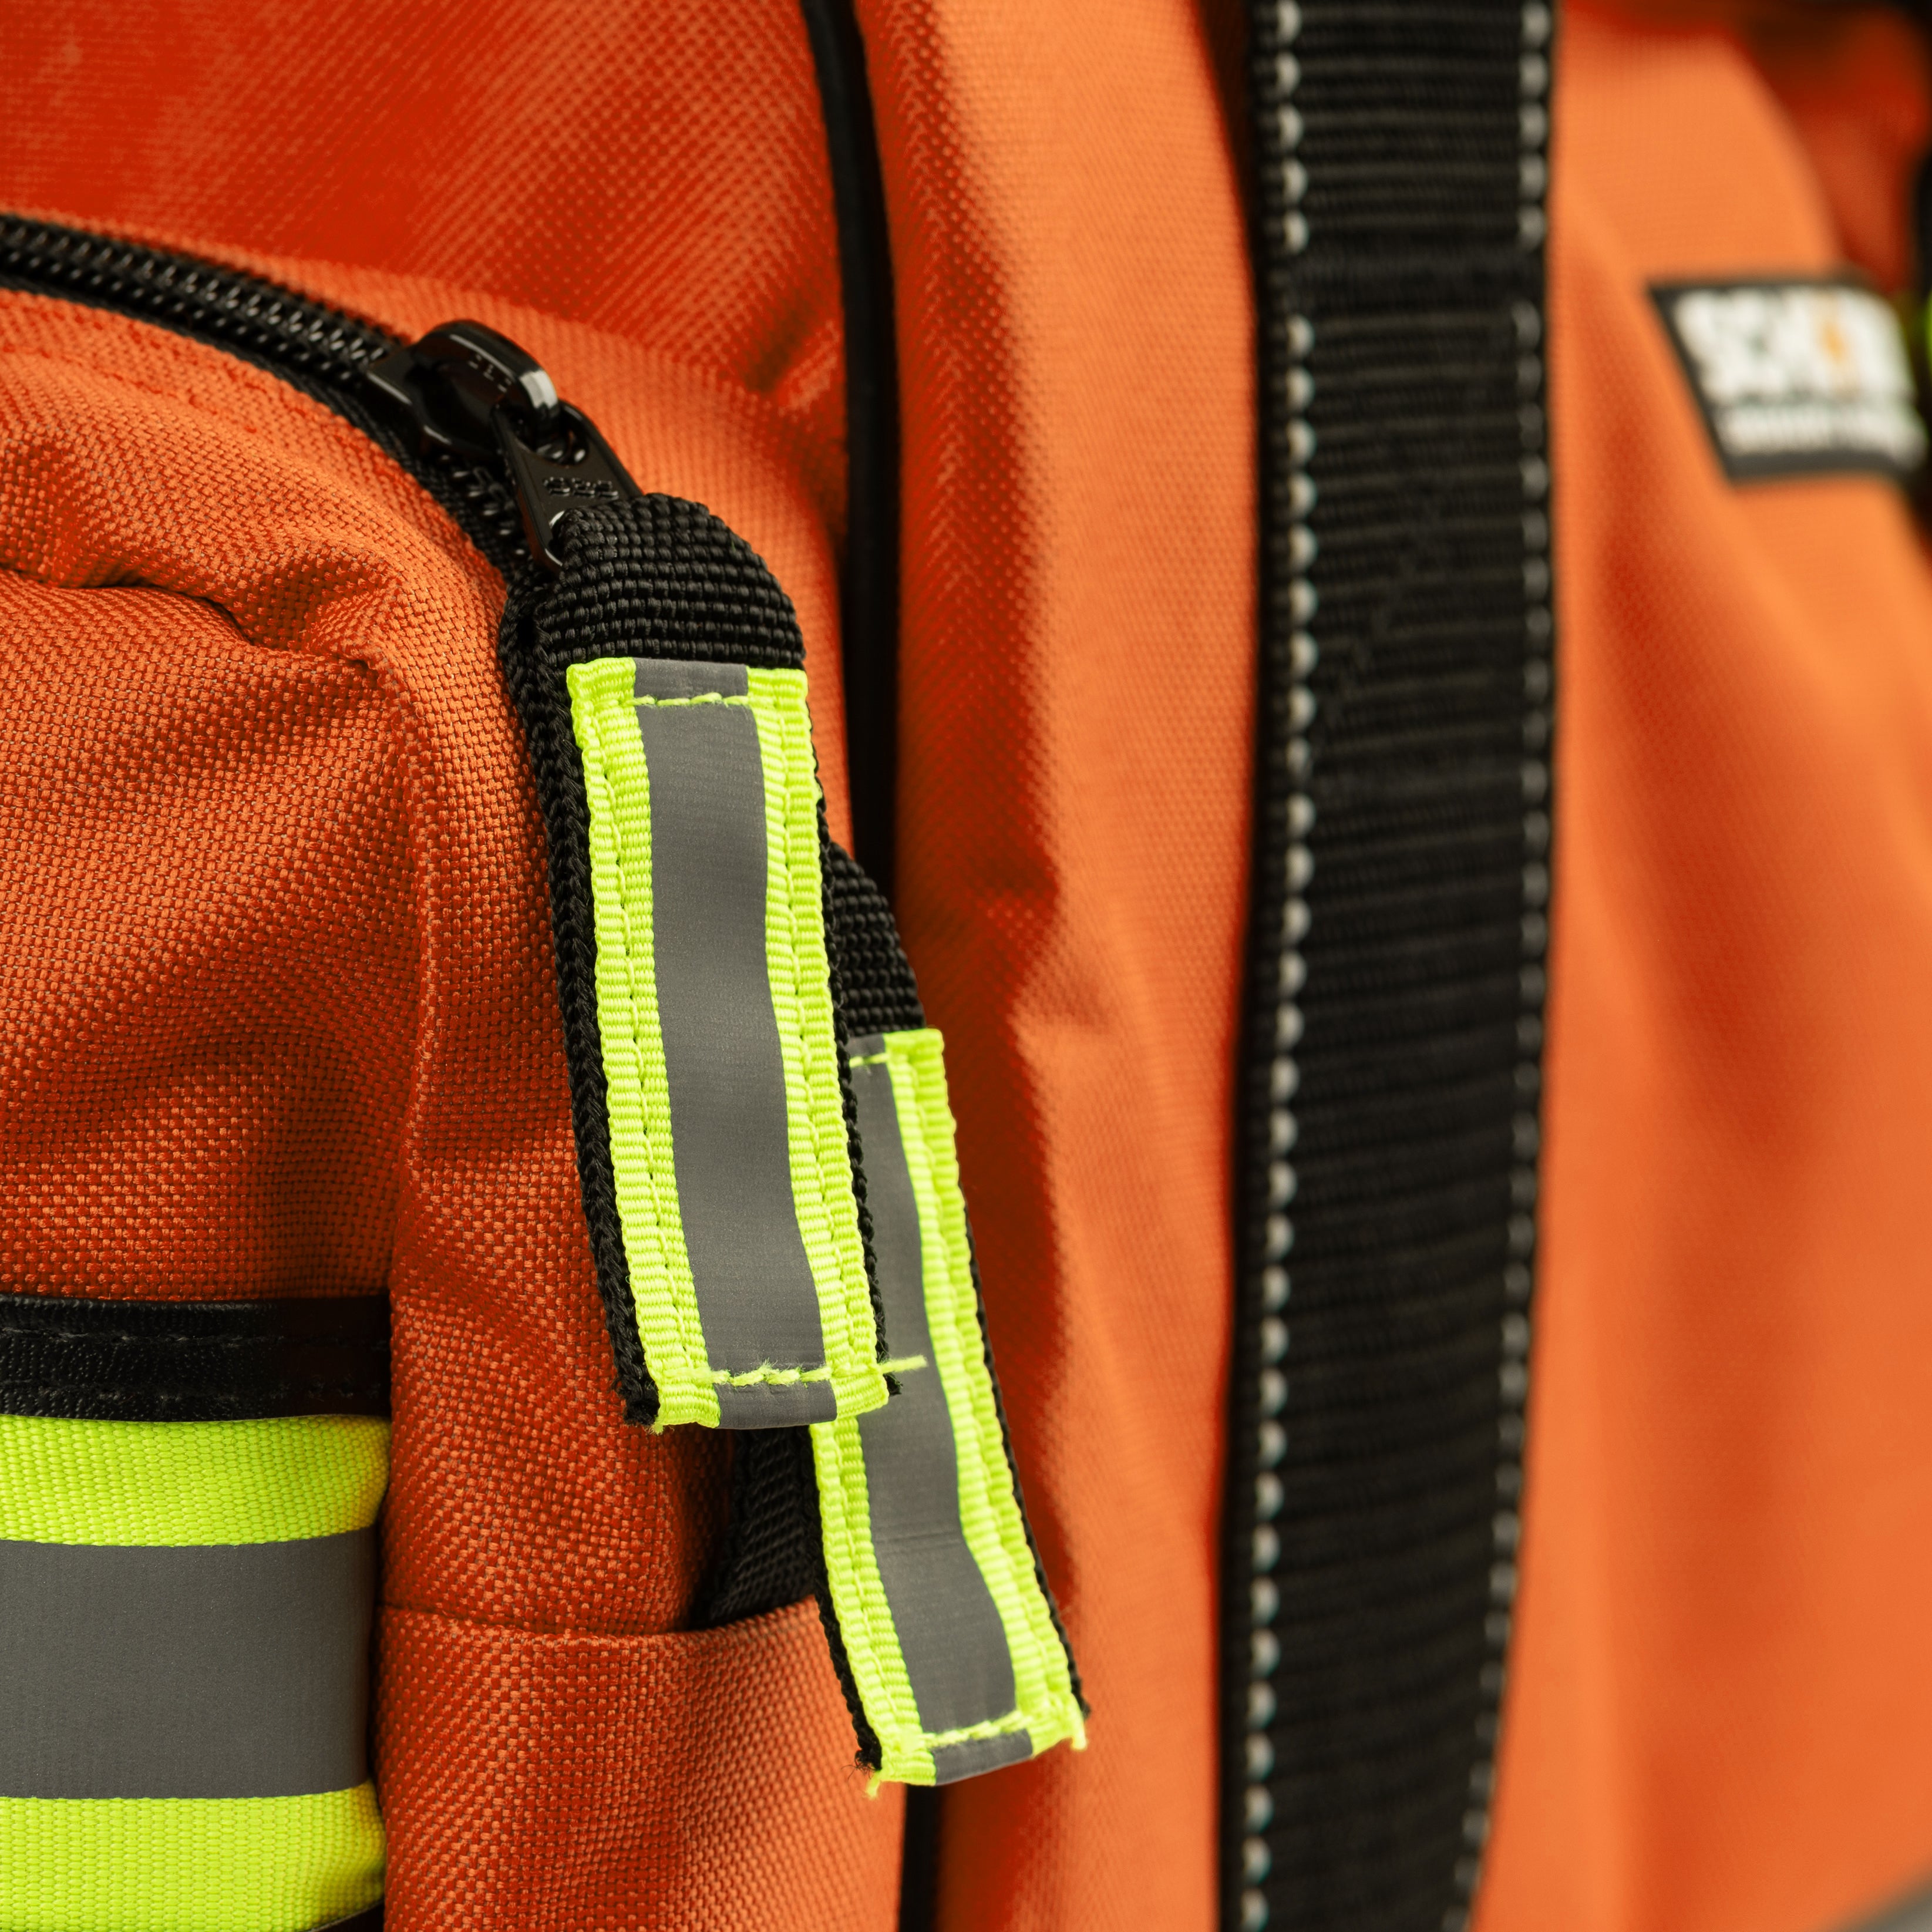 Scherber First Responder Bag | Professional Essentials+ EMT/EMS Trauma Bag